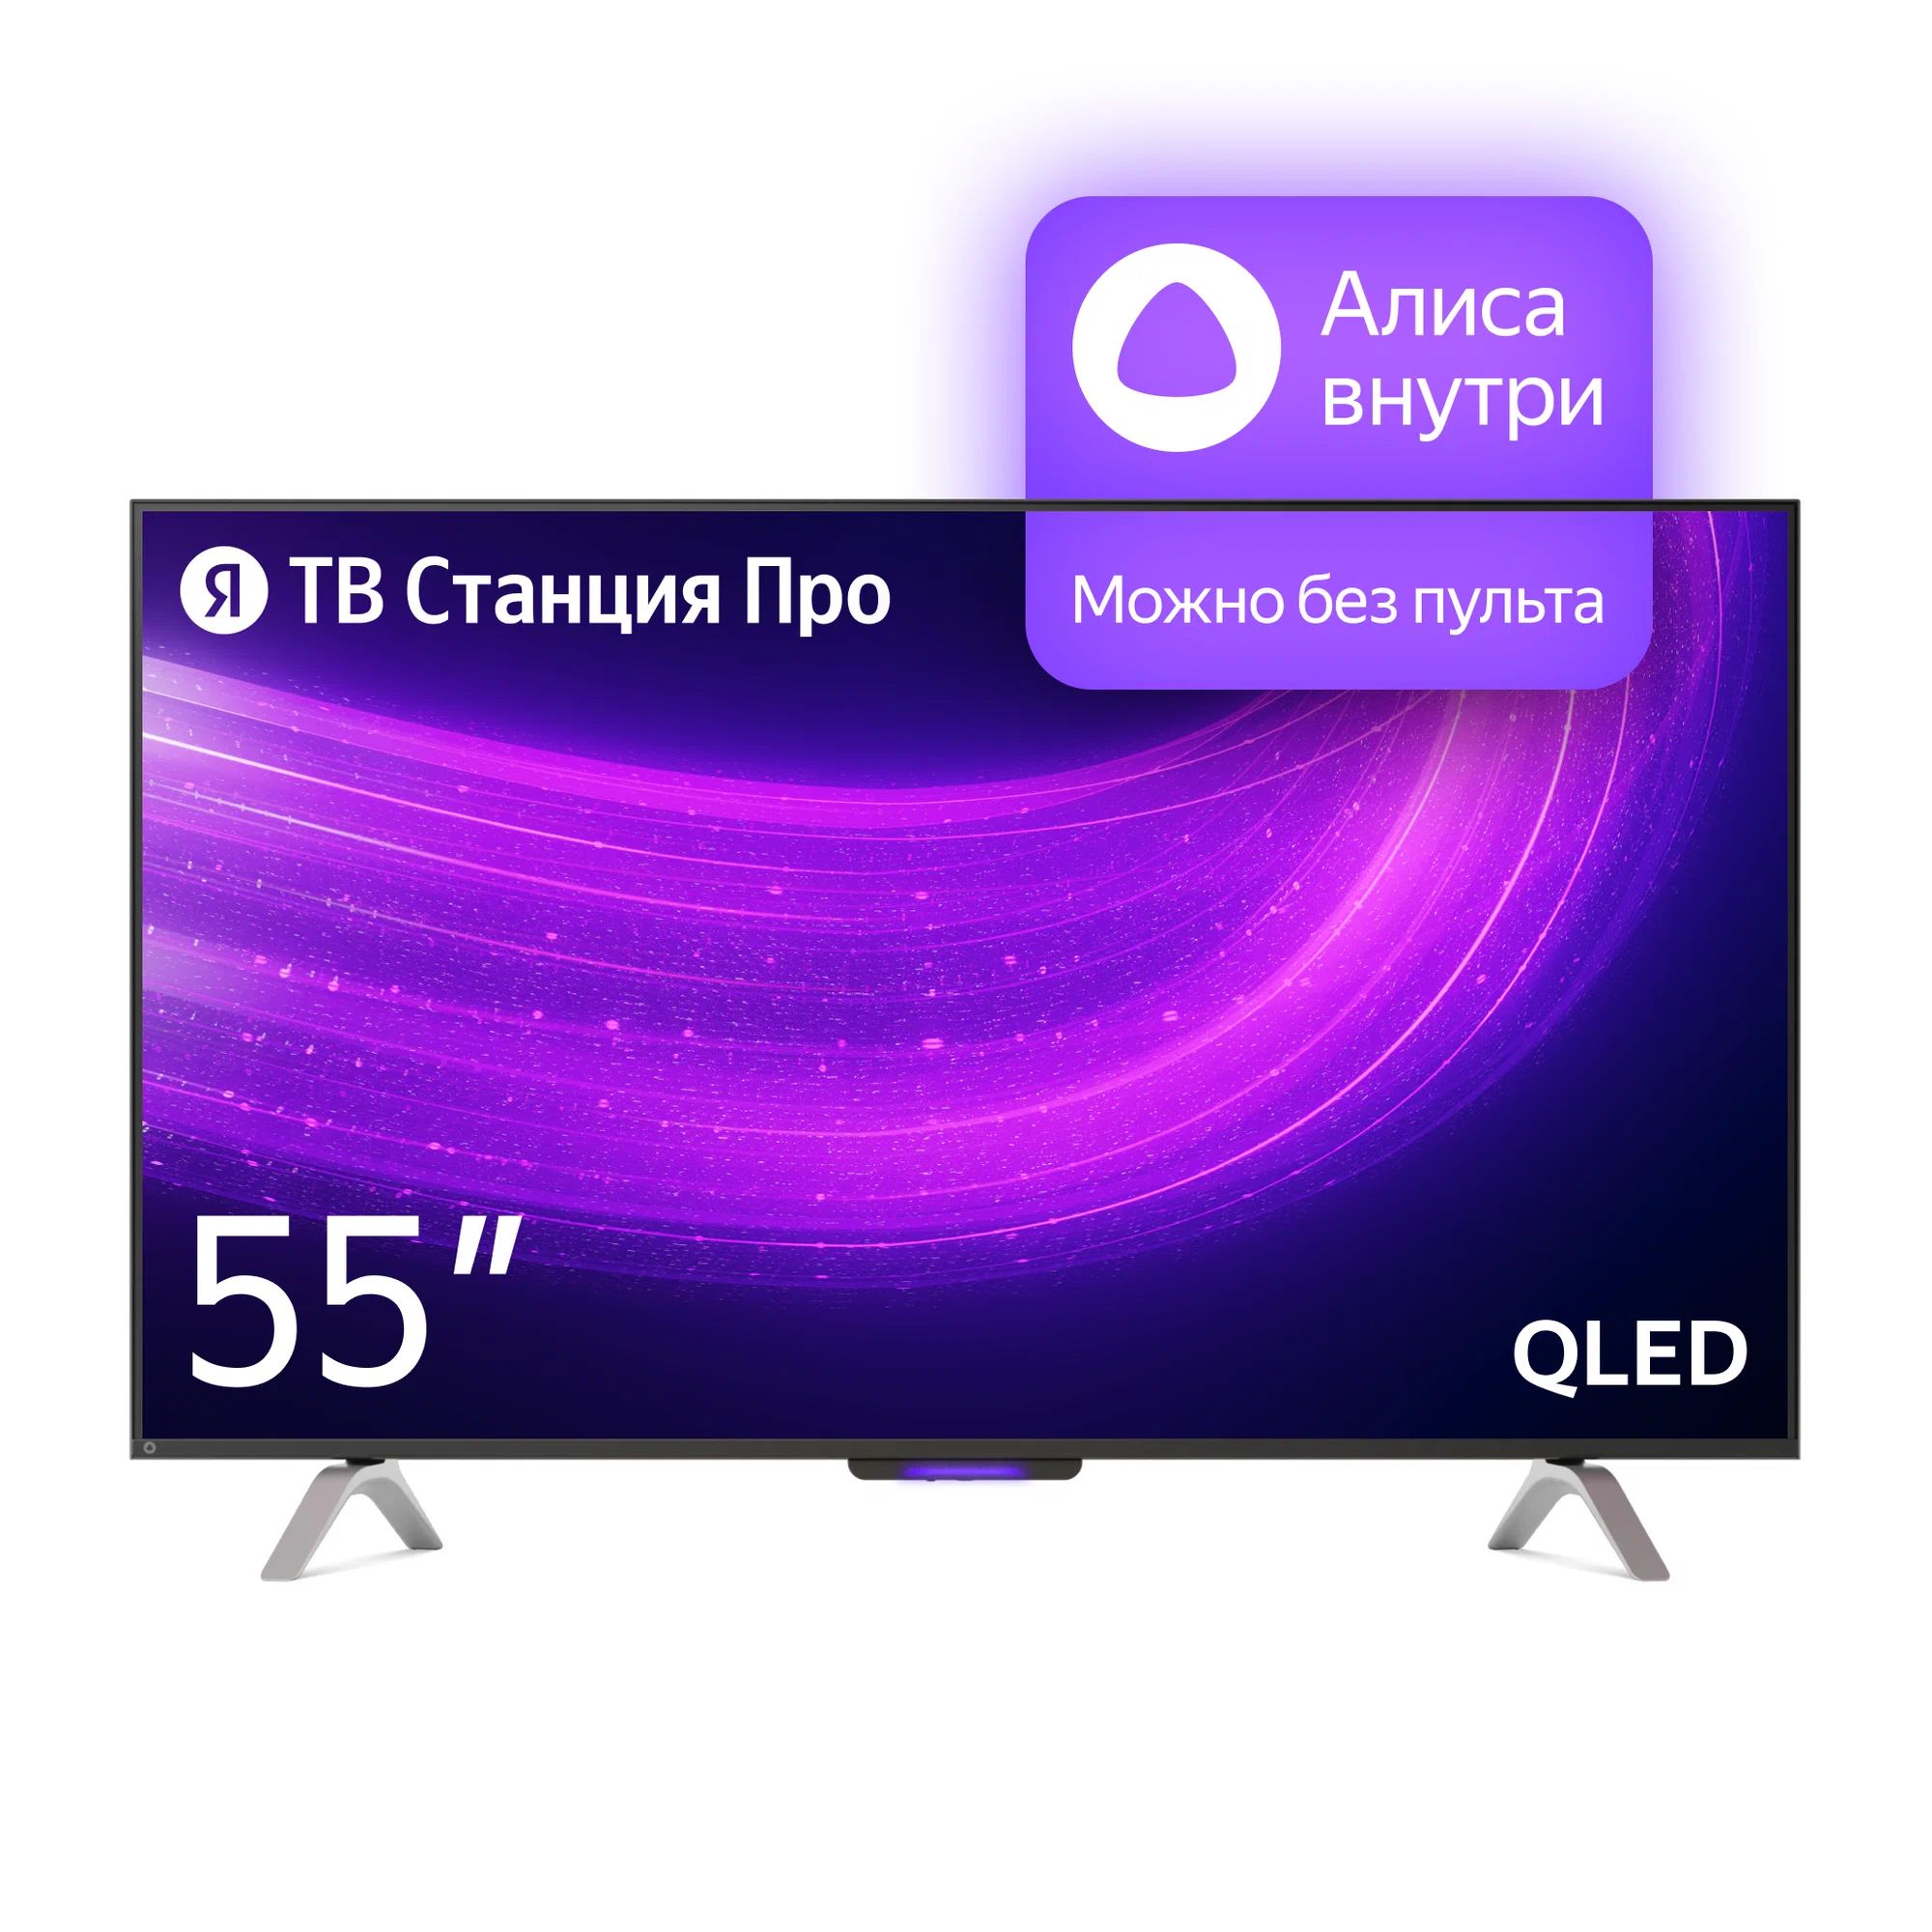 Телевизор Яндекс YNDX-00101 PRO Тв станция с Алисой 55 телевизор яндекс 55 тв станция про с алисой smart tv